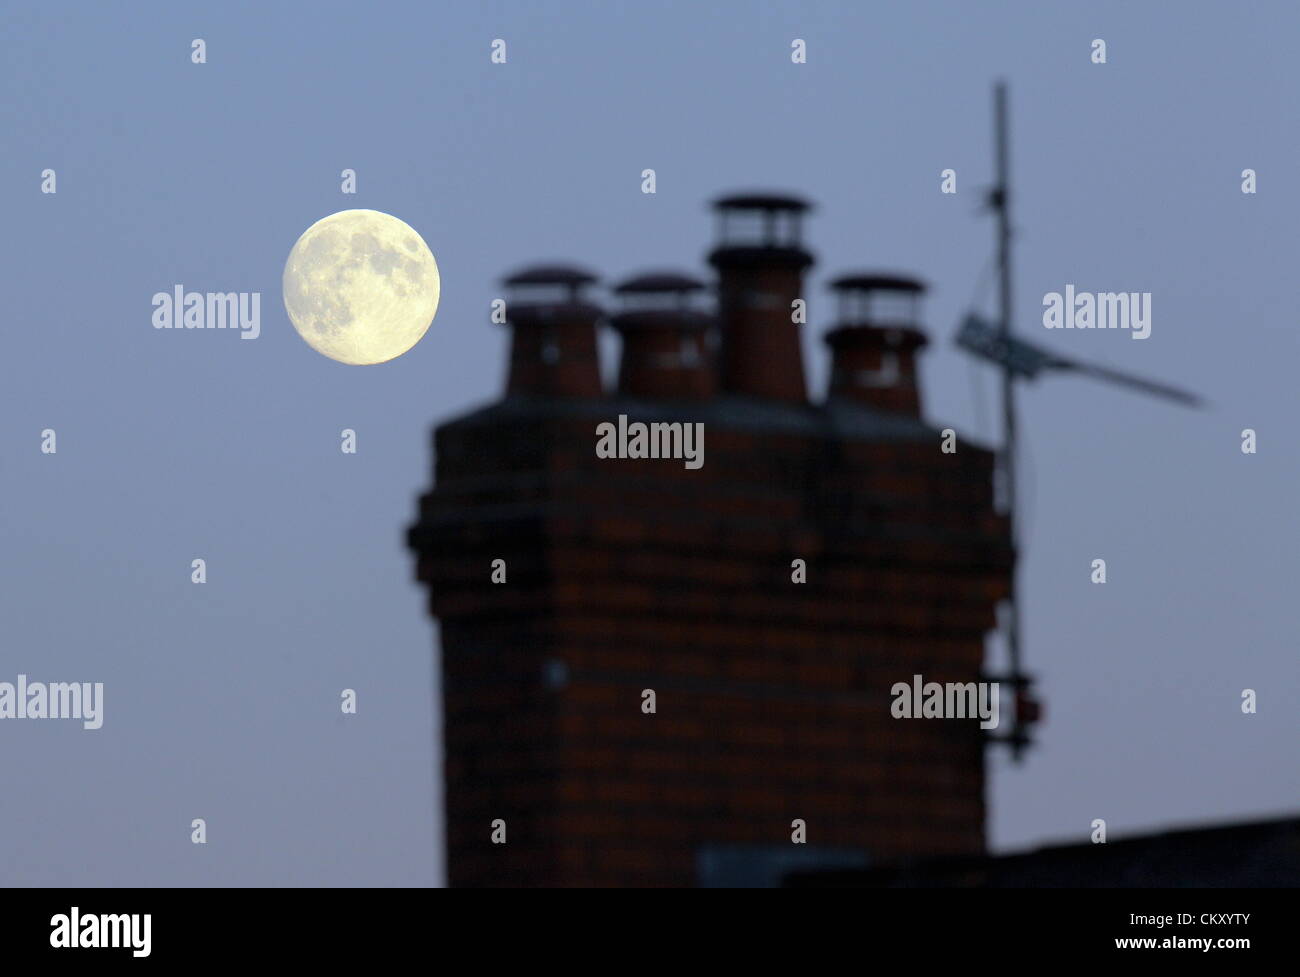 Swansea, Südwales, UK. Donnerstag, 30. August 2012. Der Mond, einen Tag bevor es voll auf Freitag, 31. August 2012 werden gesehen. "Blue Moon" ist wie sie genannt wird, wenn zwei Vollmonde in einem Monat, August auftreten. Der Mond ist der Erde am nächsten und sieht deutlich größer und heller. Stockfoto